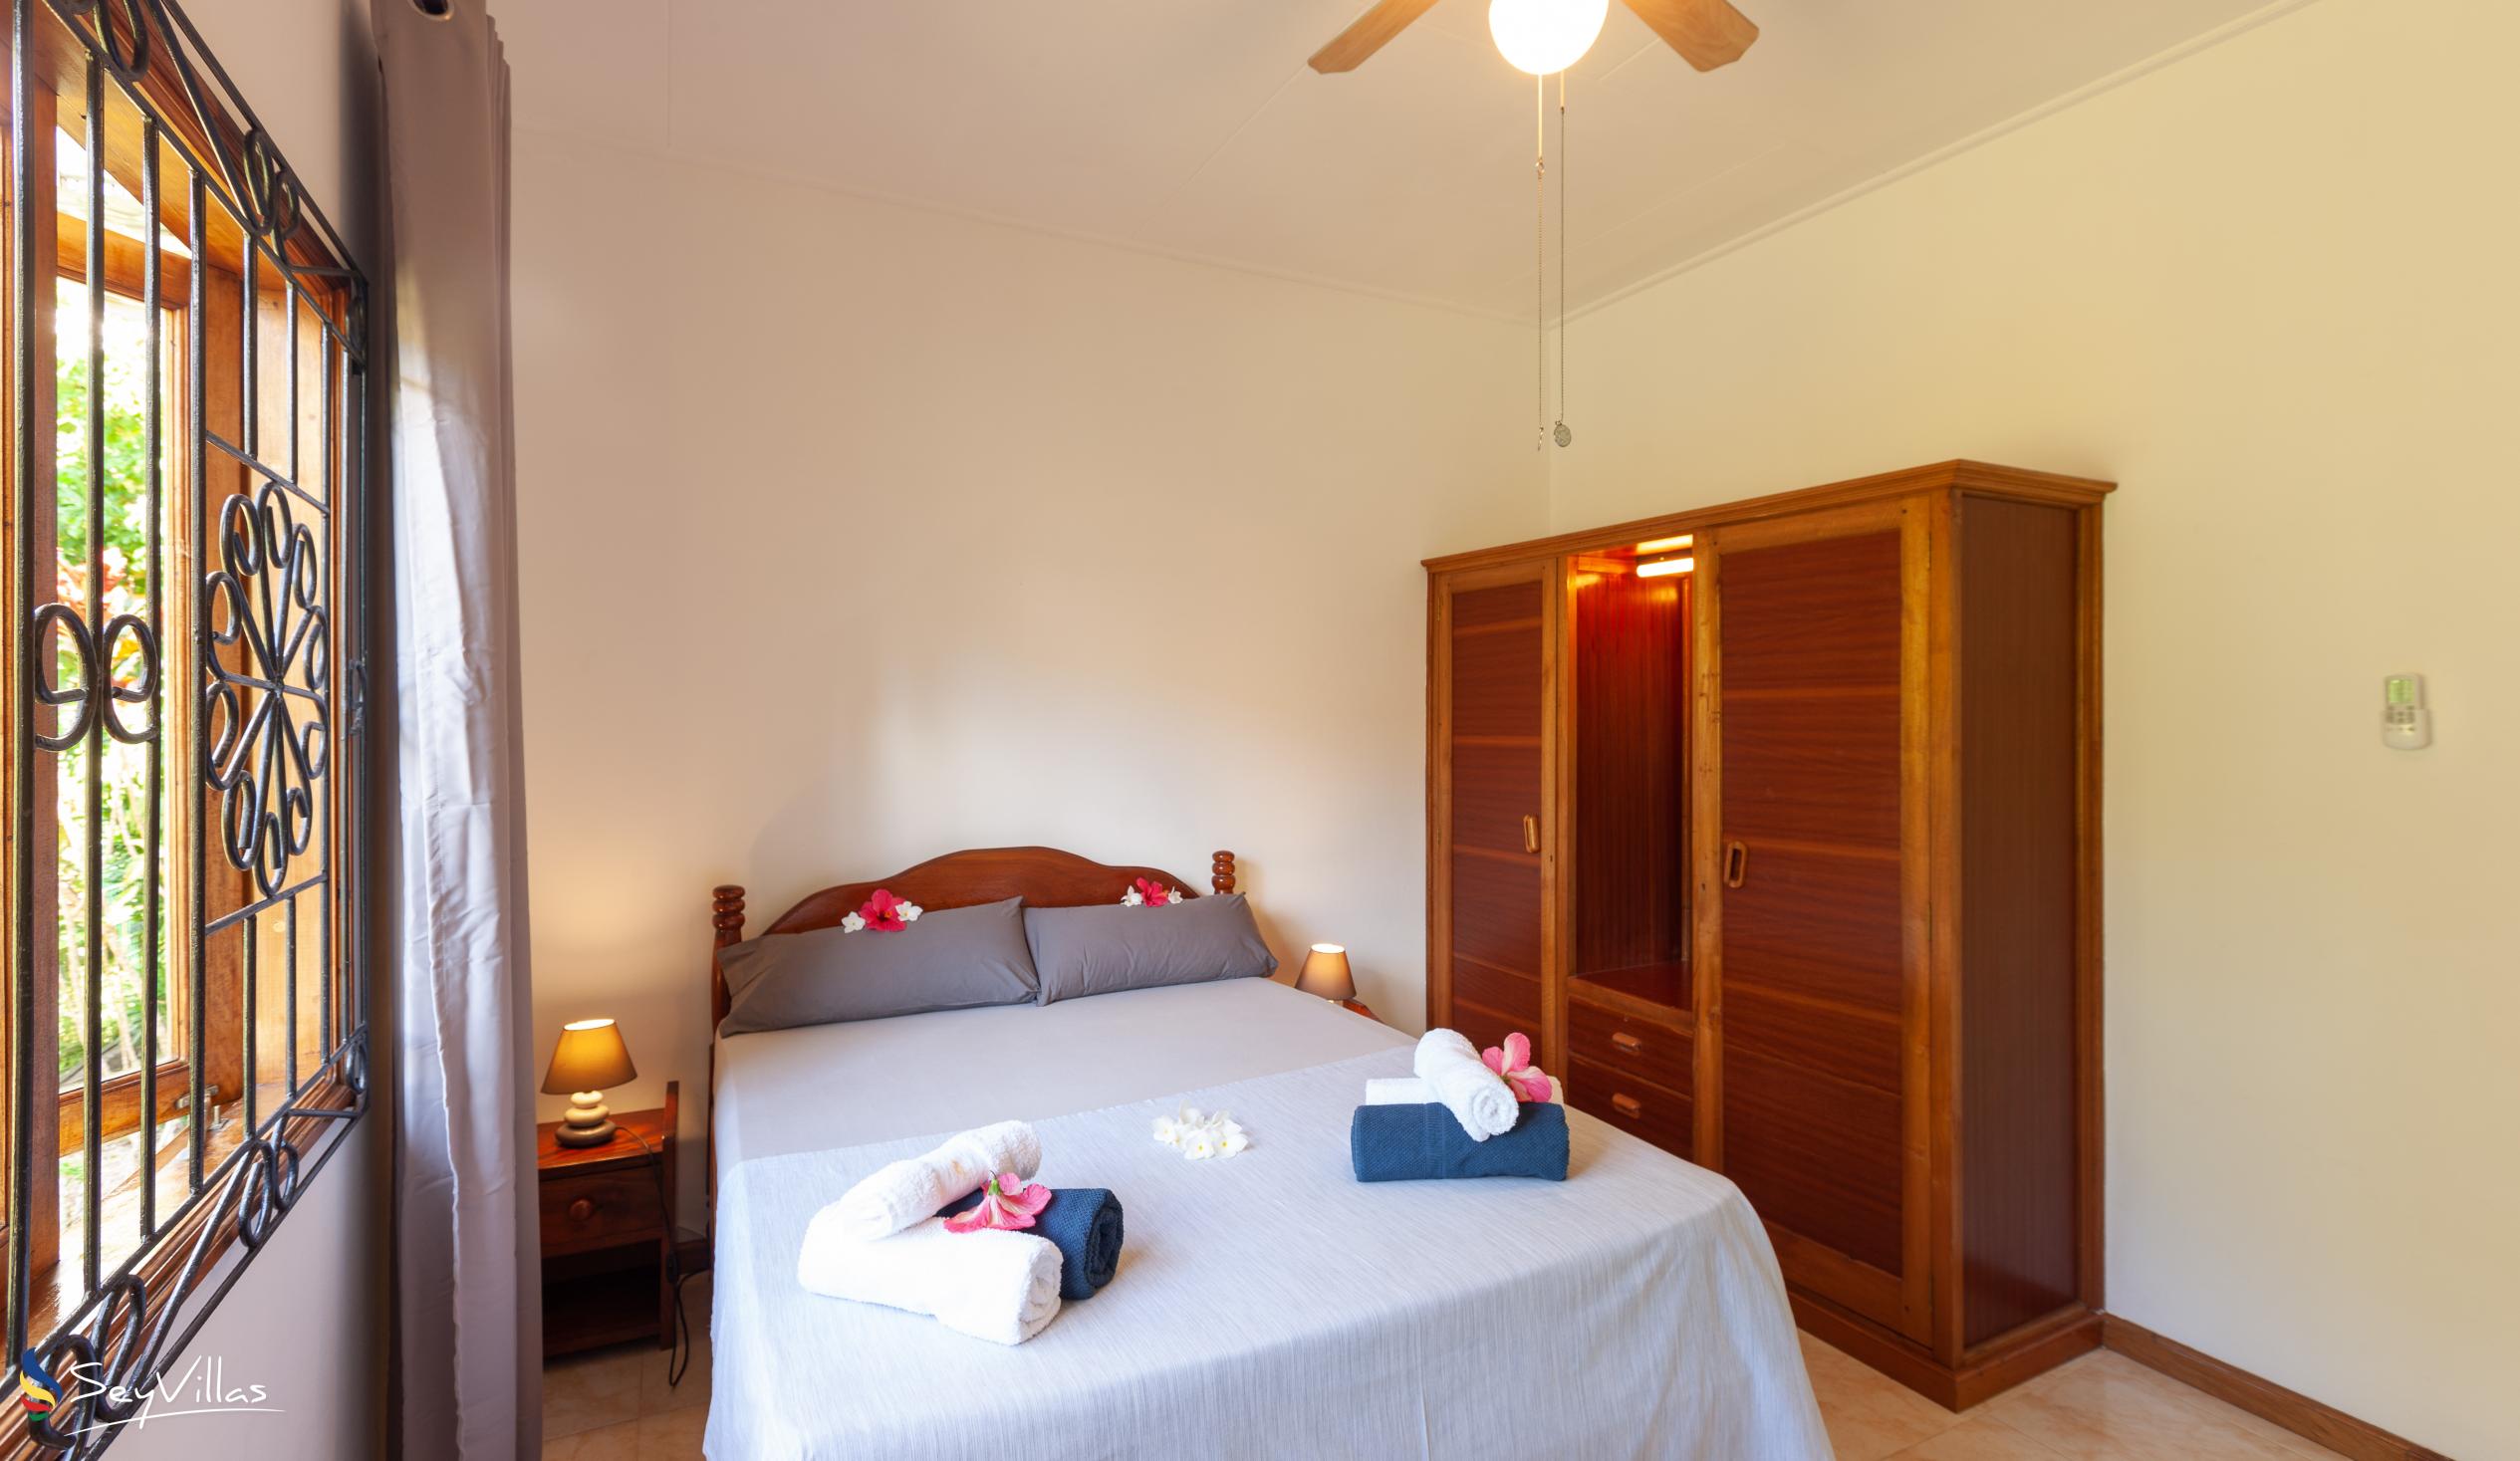 Foto 21: Chez Marlin - Maison d’hôtes de 2 chambres - Praslin (Seychelles)